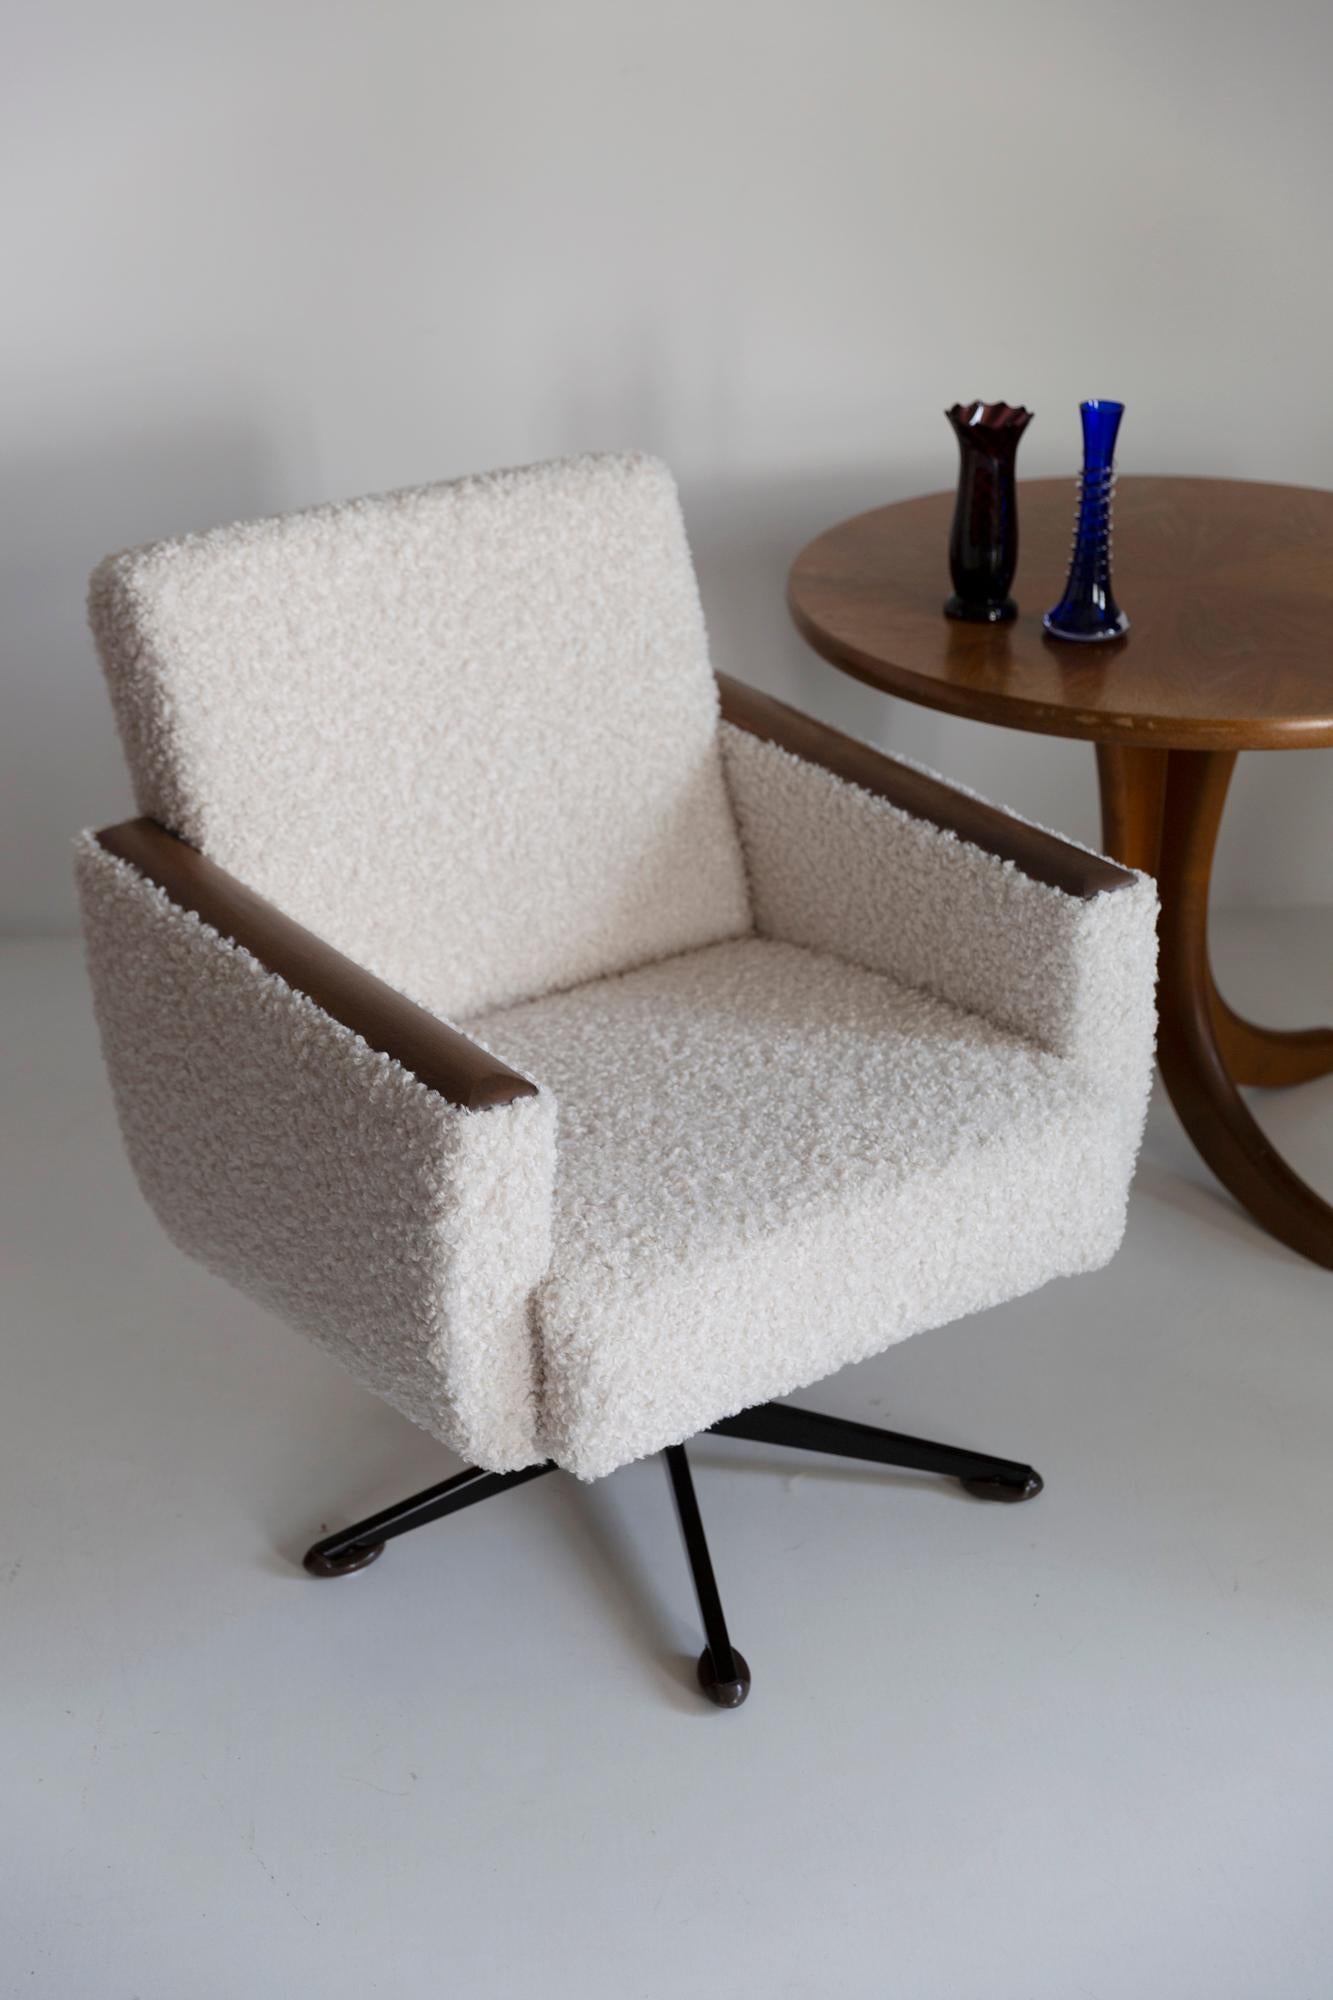 Paire d'étonnants fauteuils pivotants des années 1960, fabriqués dans l'usine de meubles silésienne de Swiebodzin - à l'heure actuelle, ils sont uniques. Très confortable. Grâce à leurs dimensions, ils s'intègrent parfaitement, même dans les petits